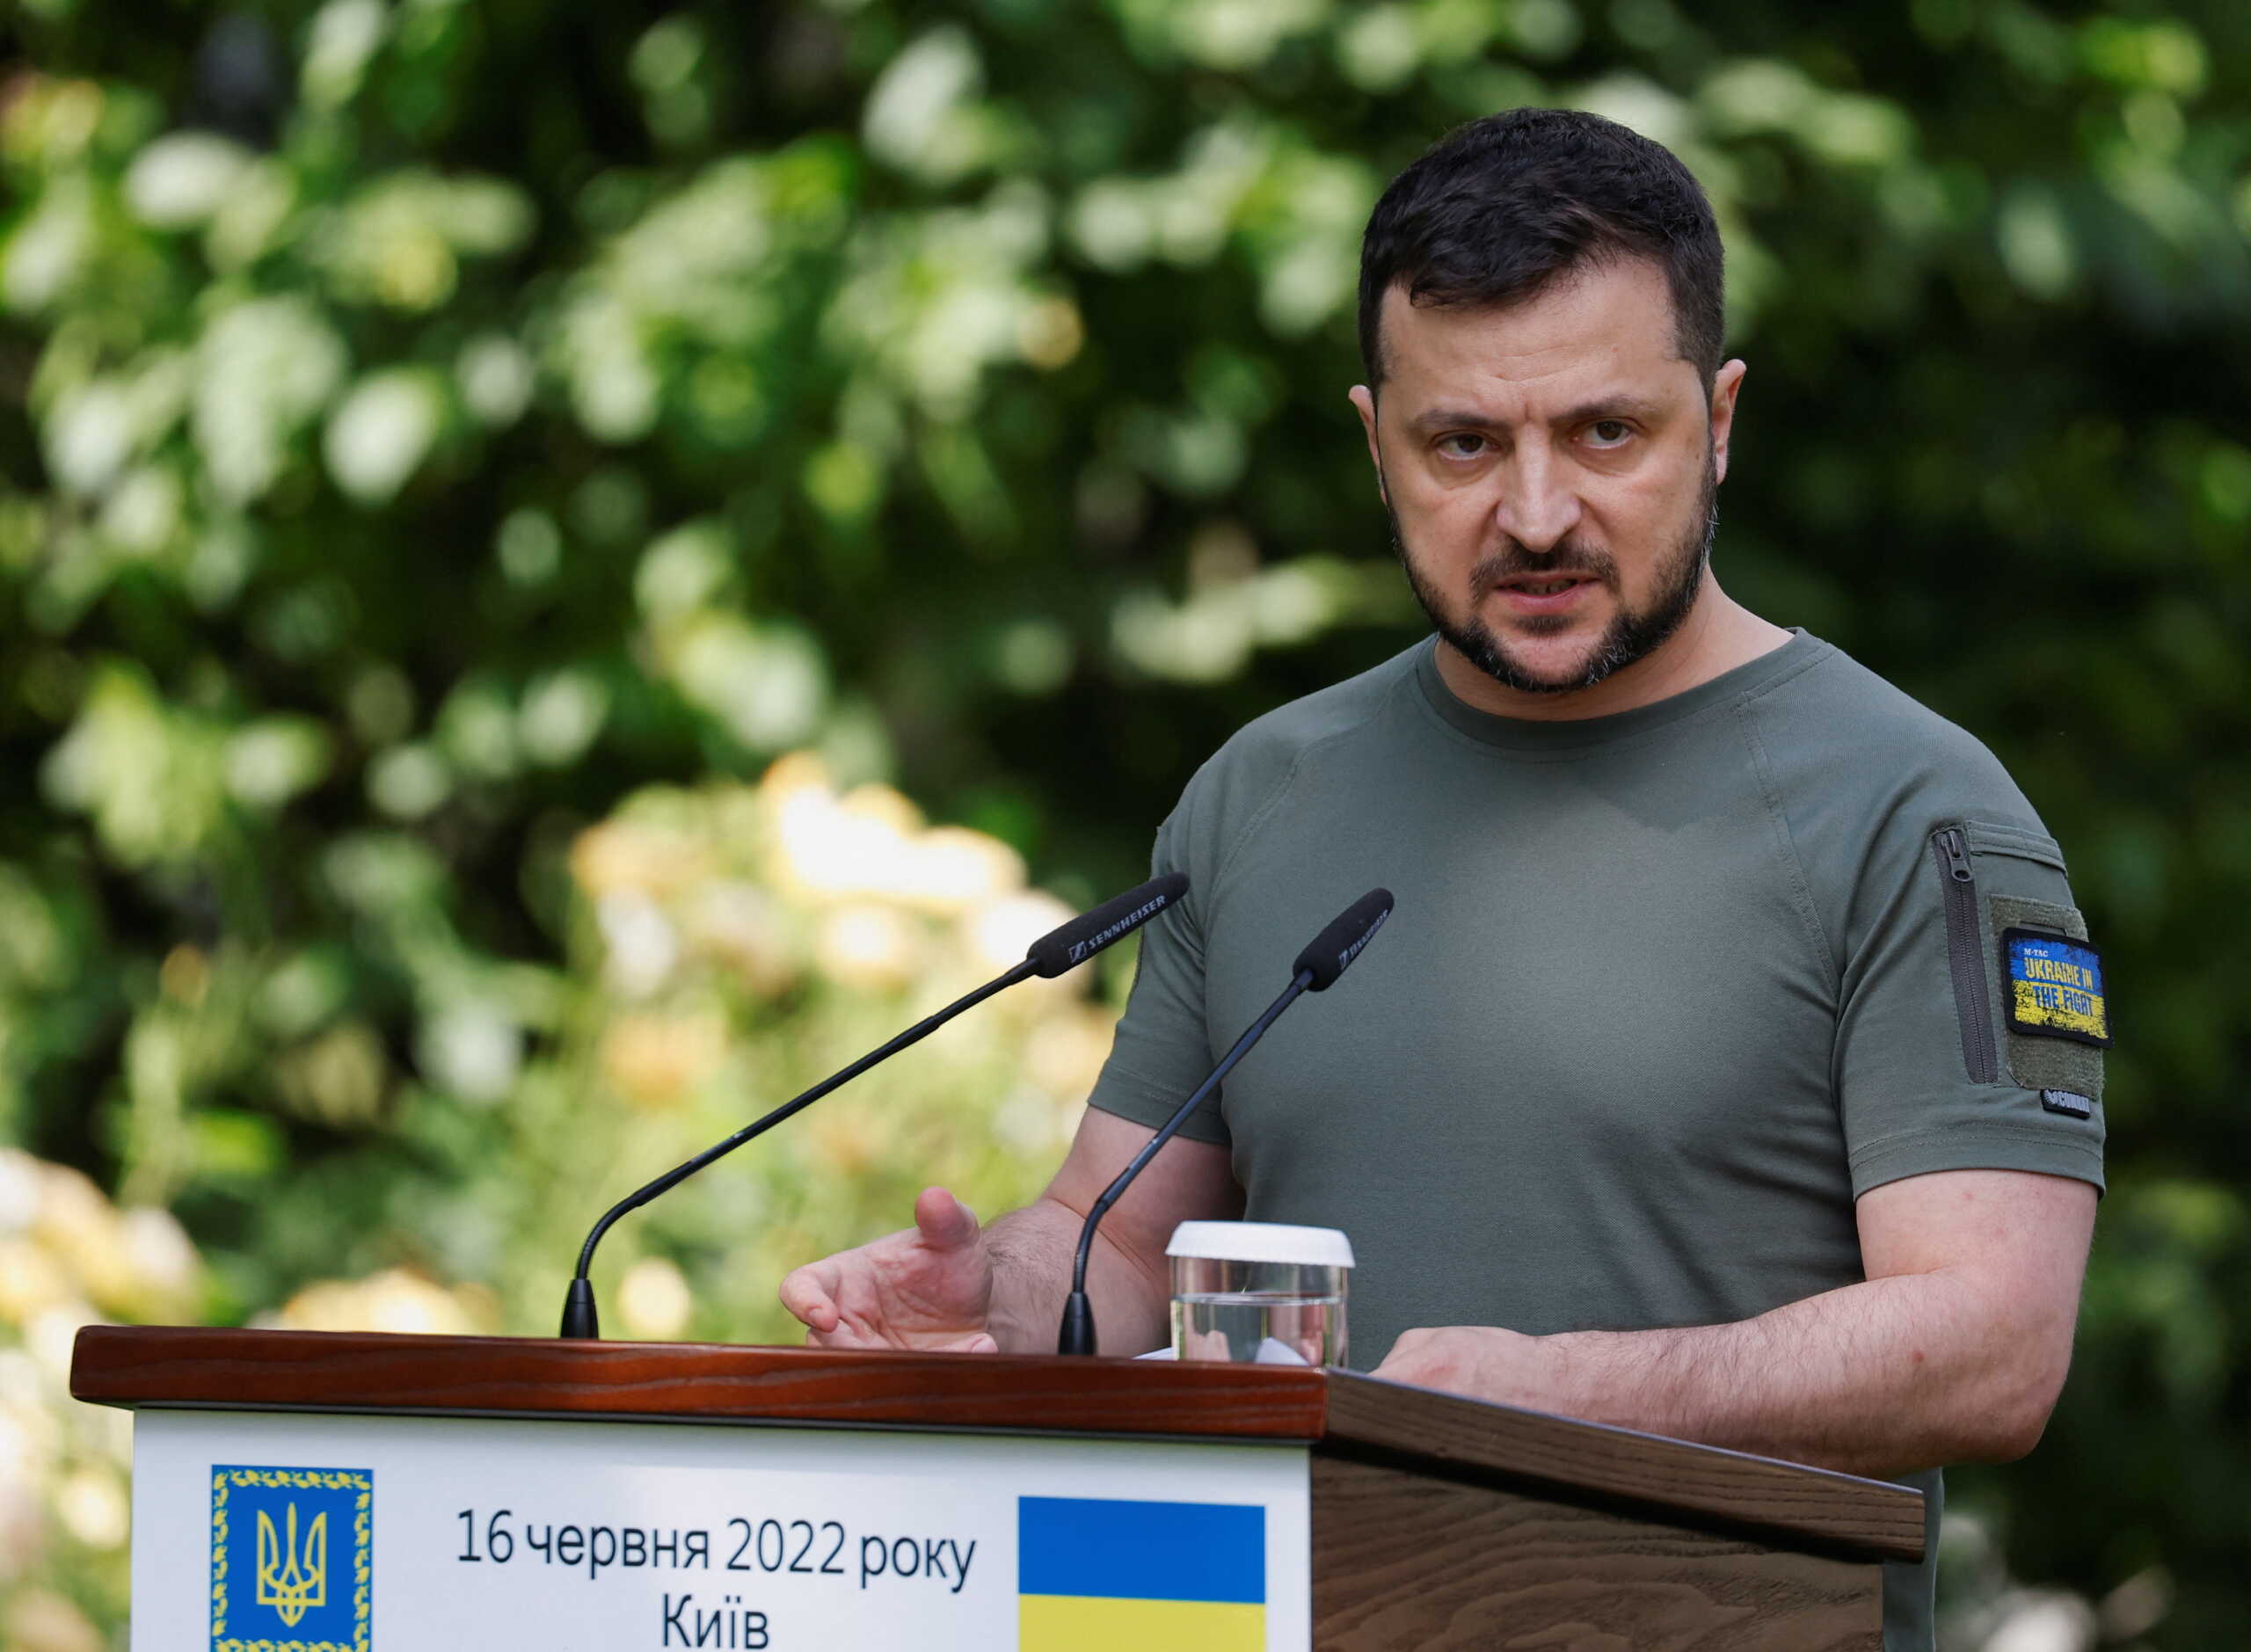 Πόλεμος στην Ουκρανία: Οργισμένος ο Βολοντίμιρ Ζελένσκι για διαρροές σχετικά με τις κινήσεις του ουκρανικού στρατού